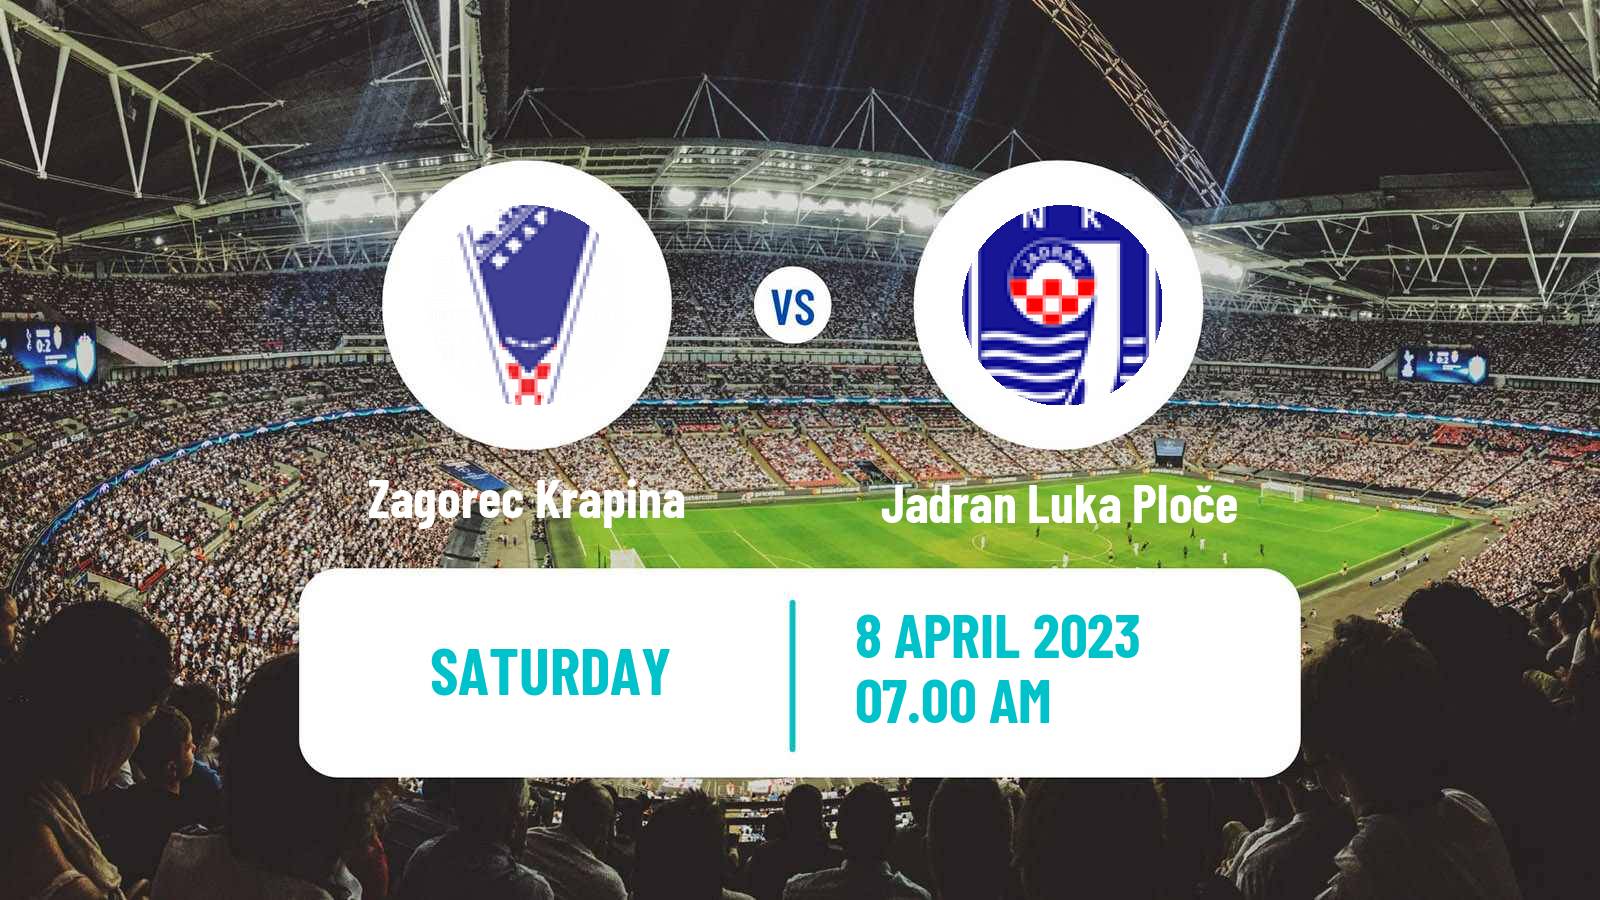 Soccer Croatian Druga NL Zagorec Krapina - Jadran Luka Ploče